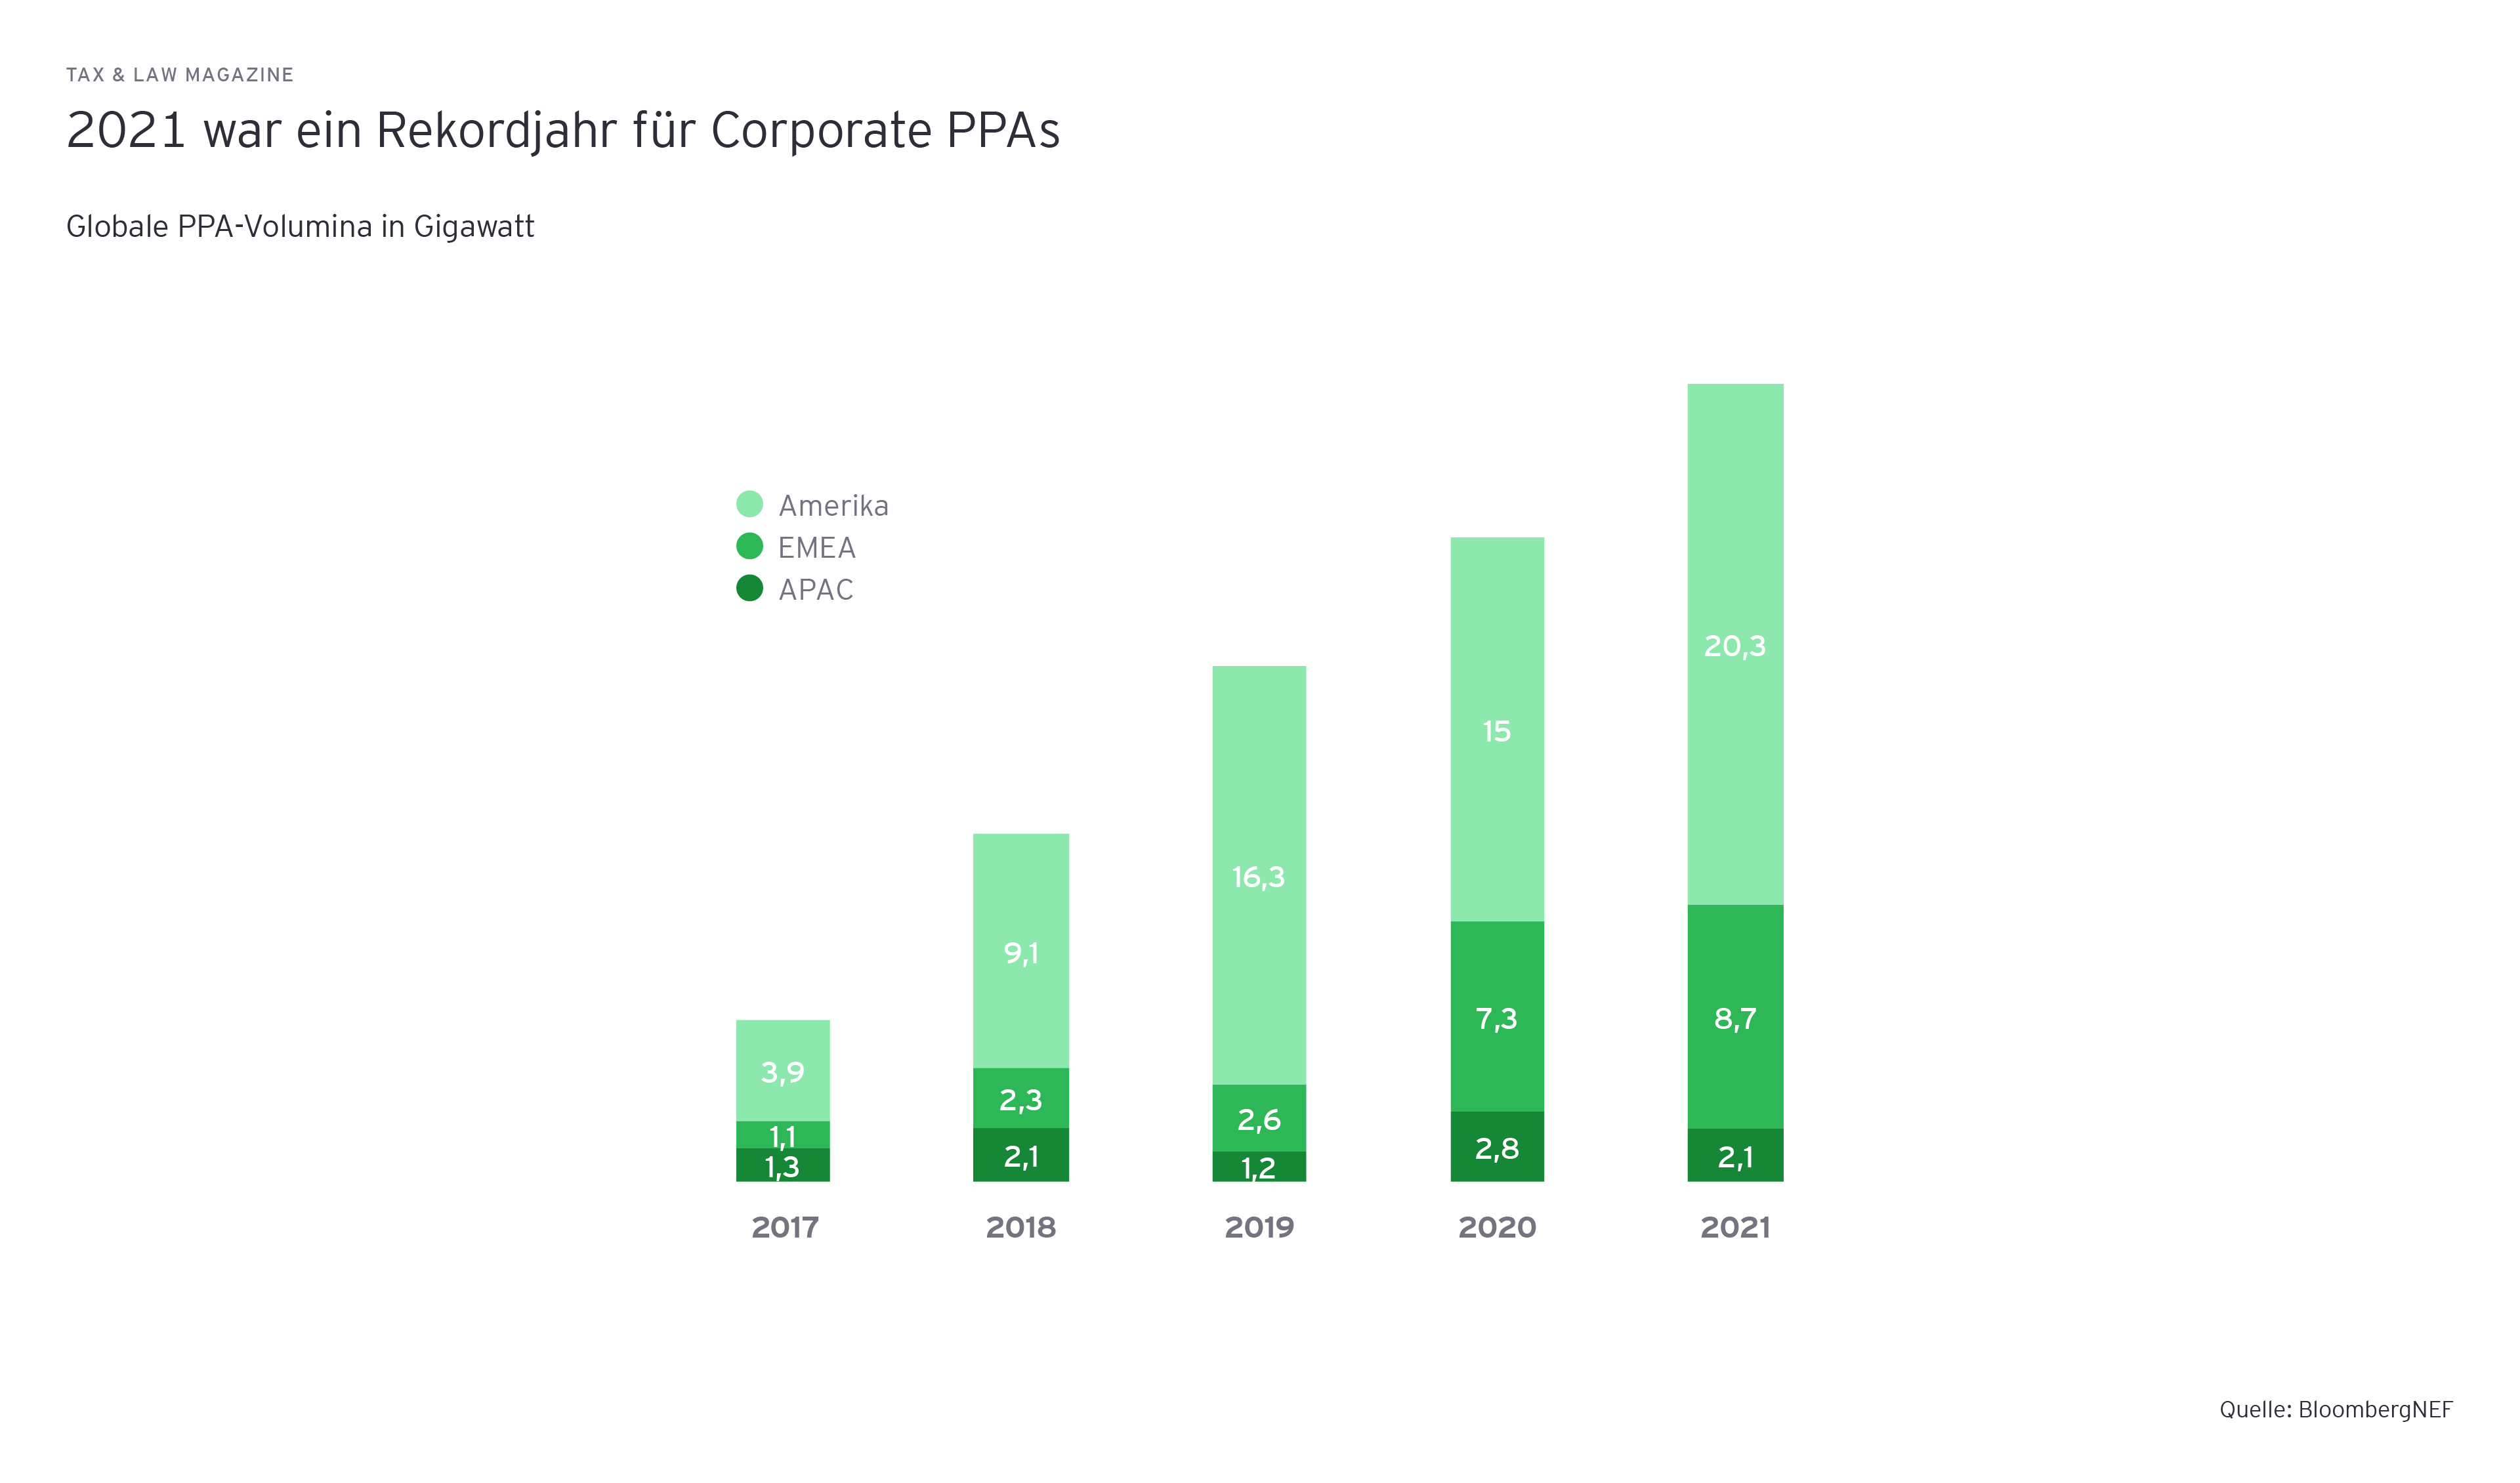 2021 war ein Rekordjahr fuer Corporate PPAs